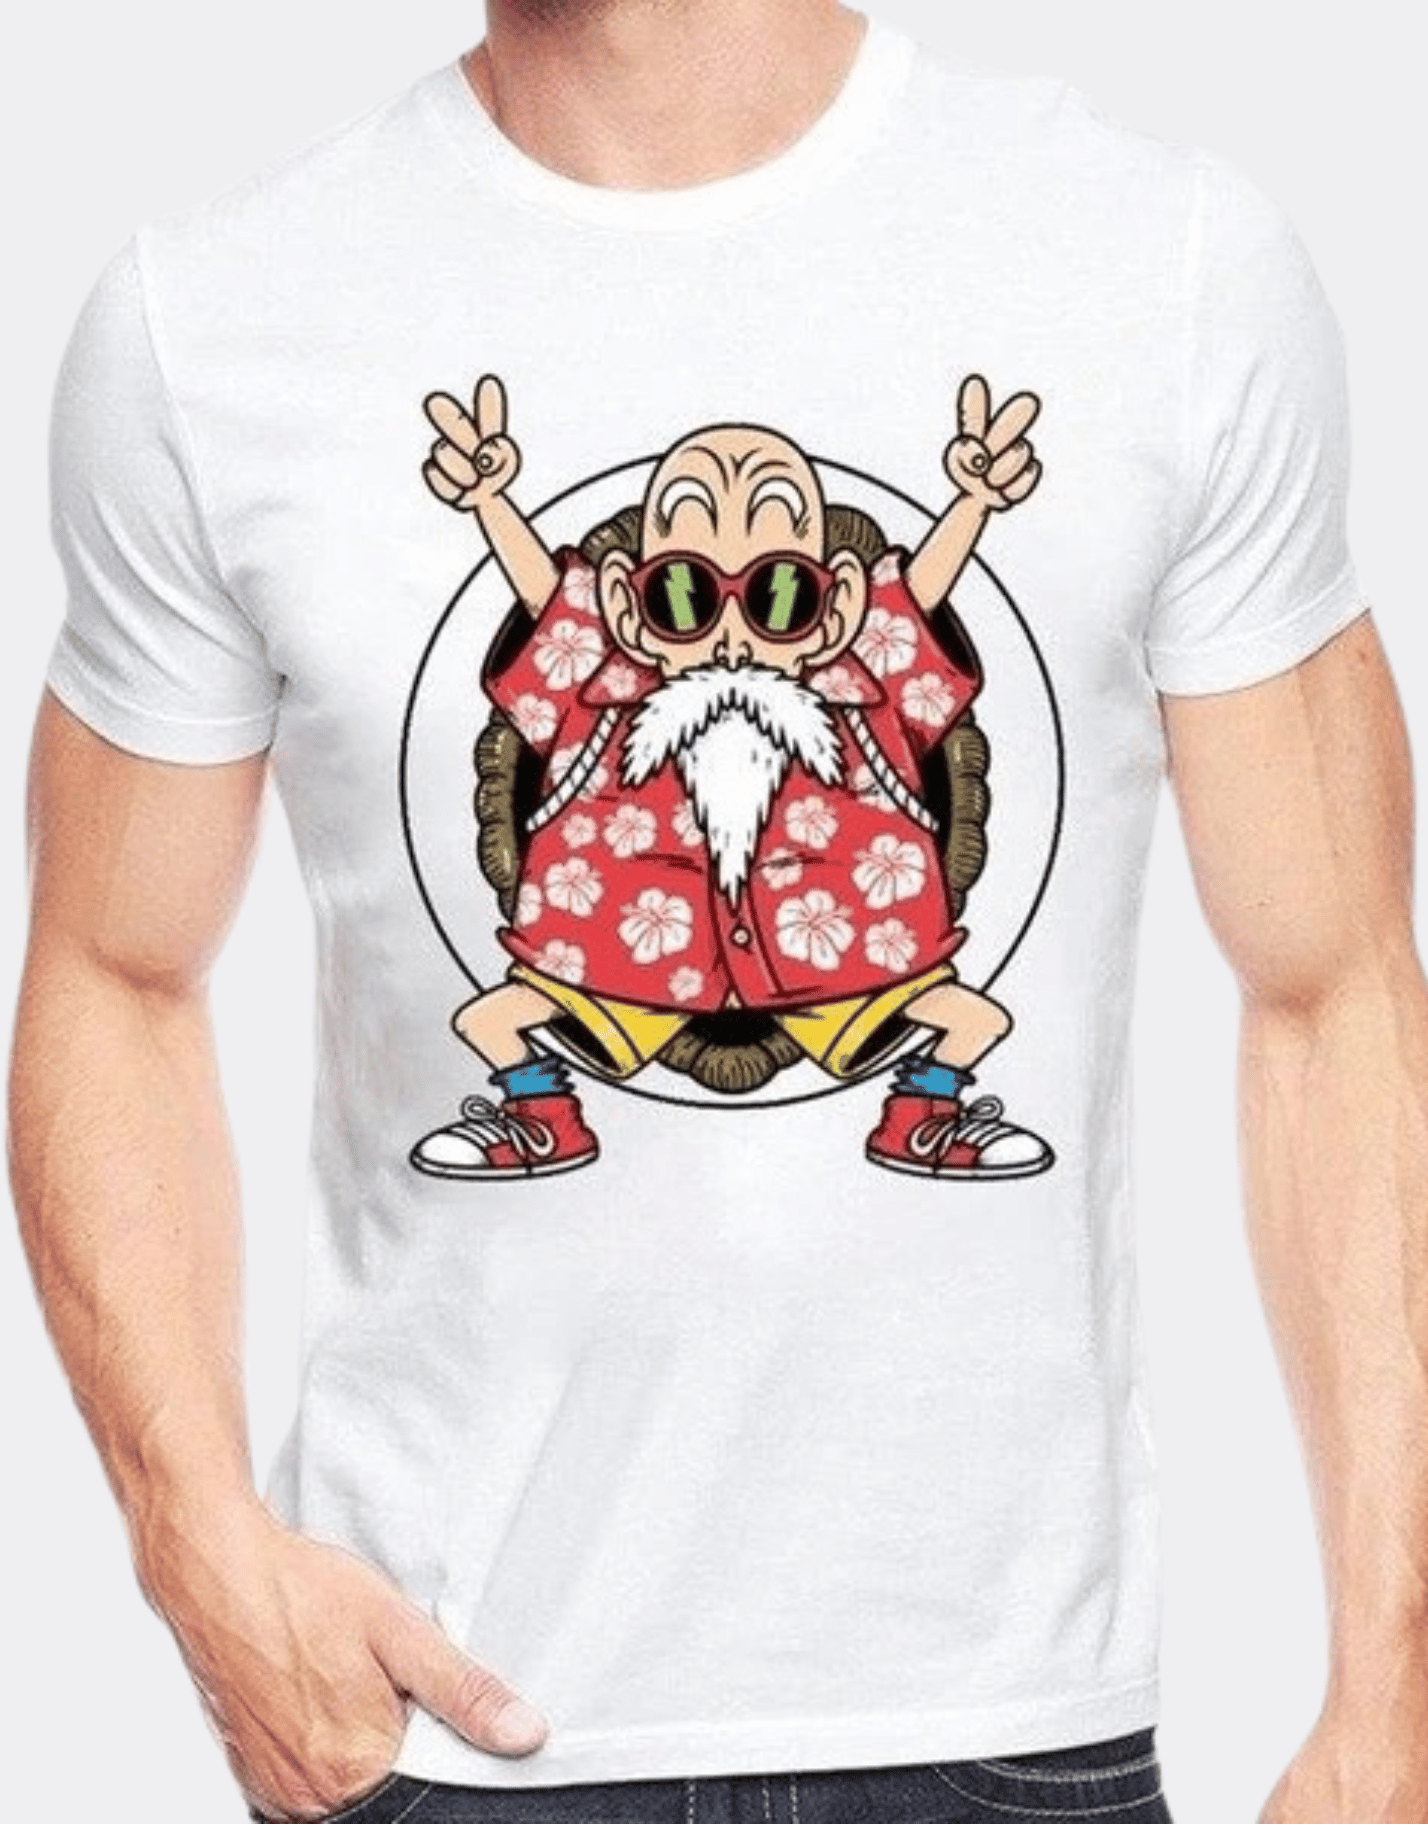 T-shirt Manga Dragon Ball Z Tortue géniale cool